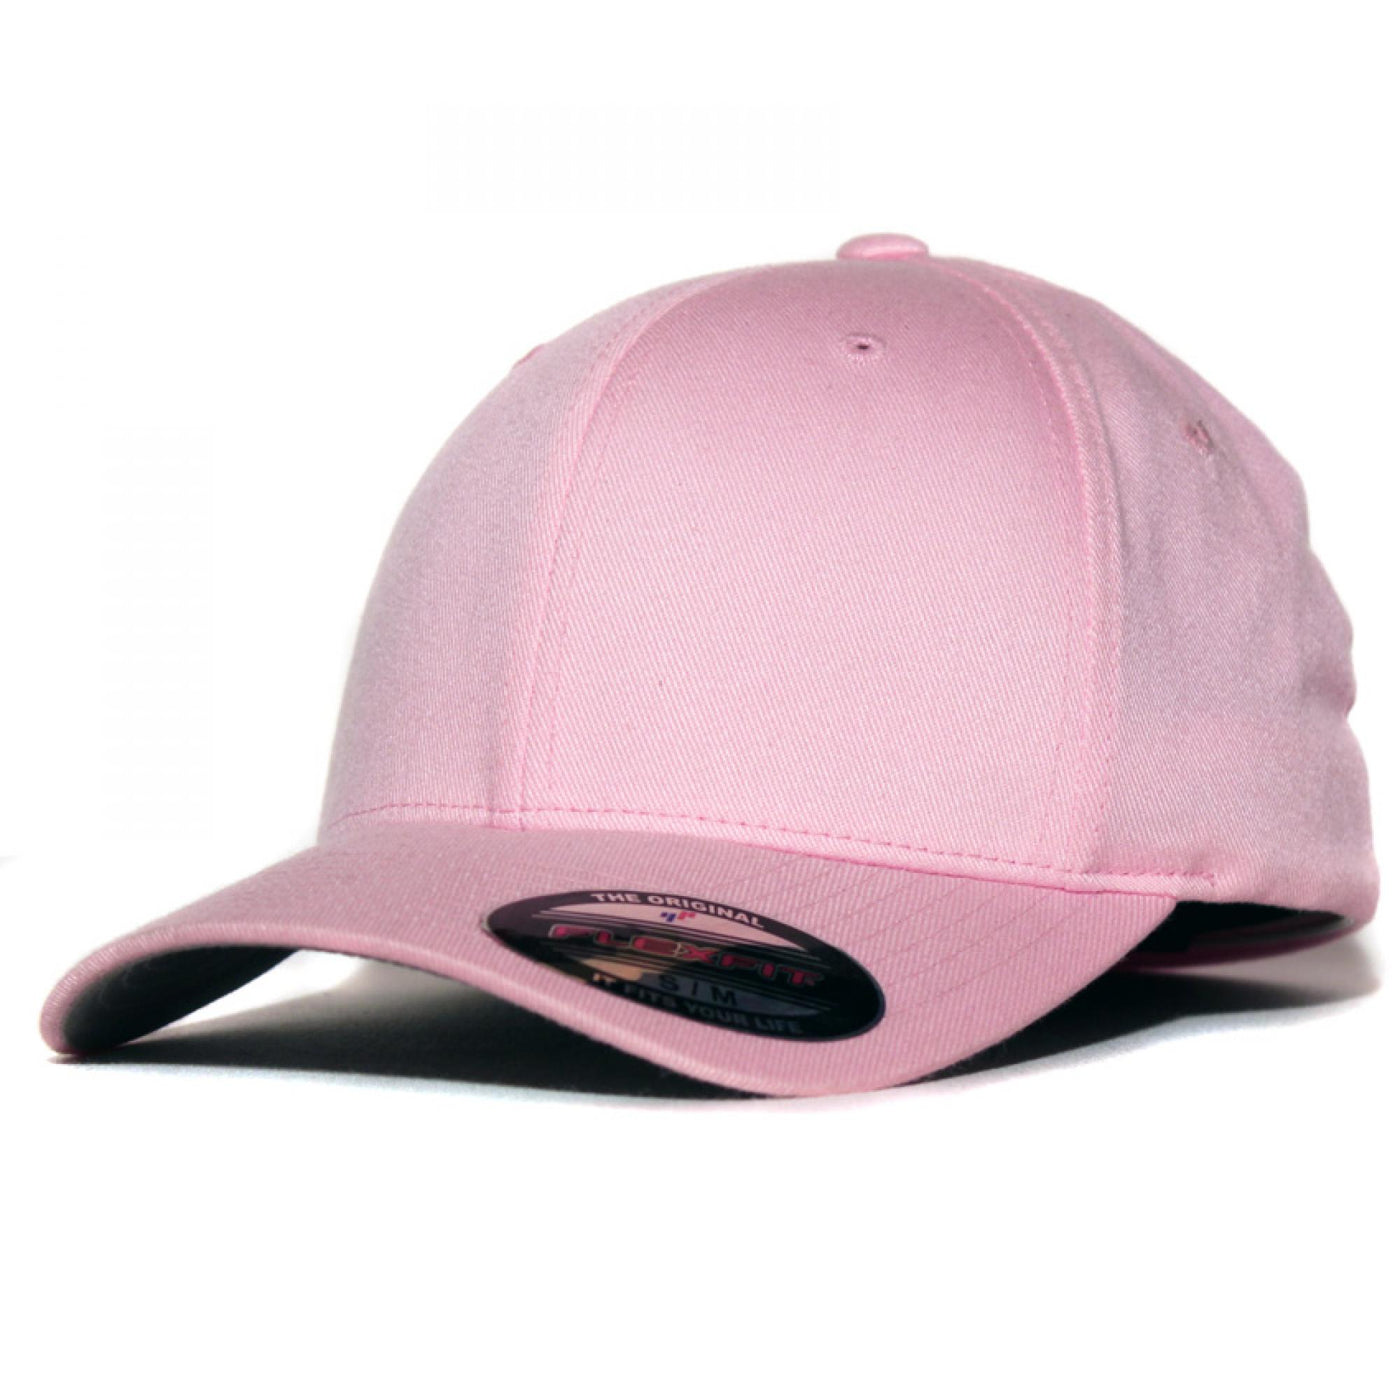 Flexfit cap pink - Shop-Tetuan